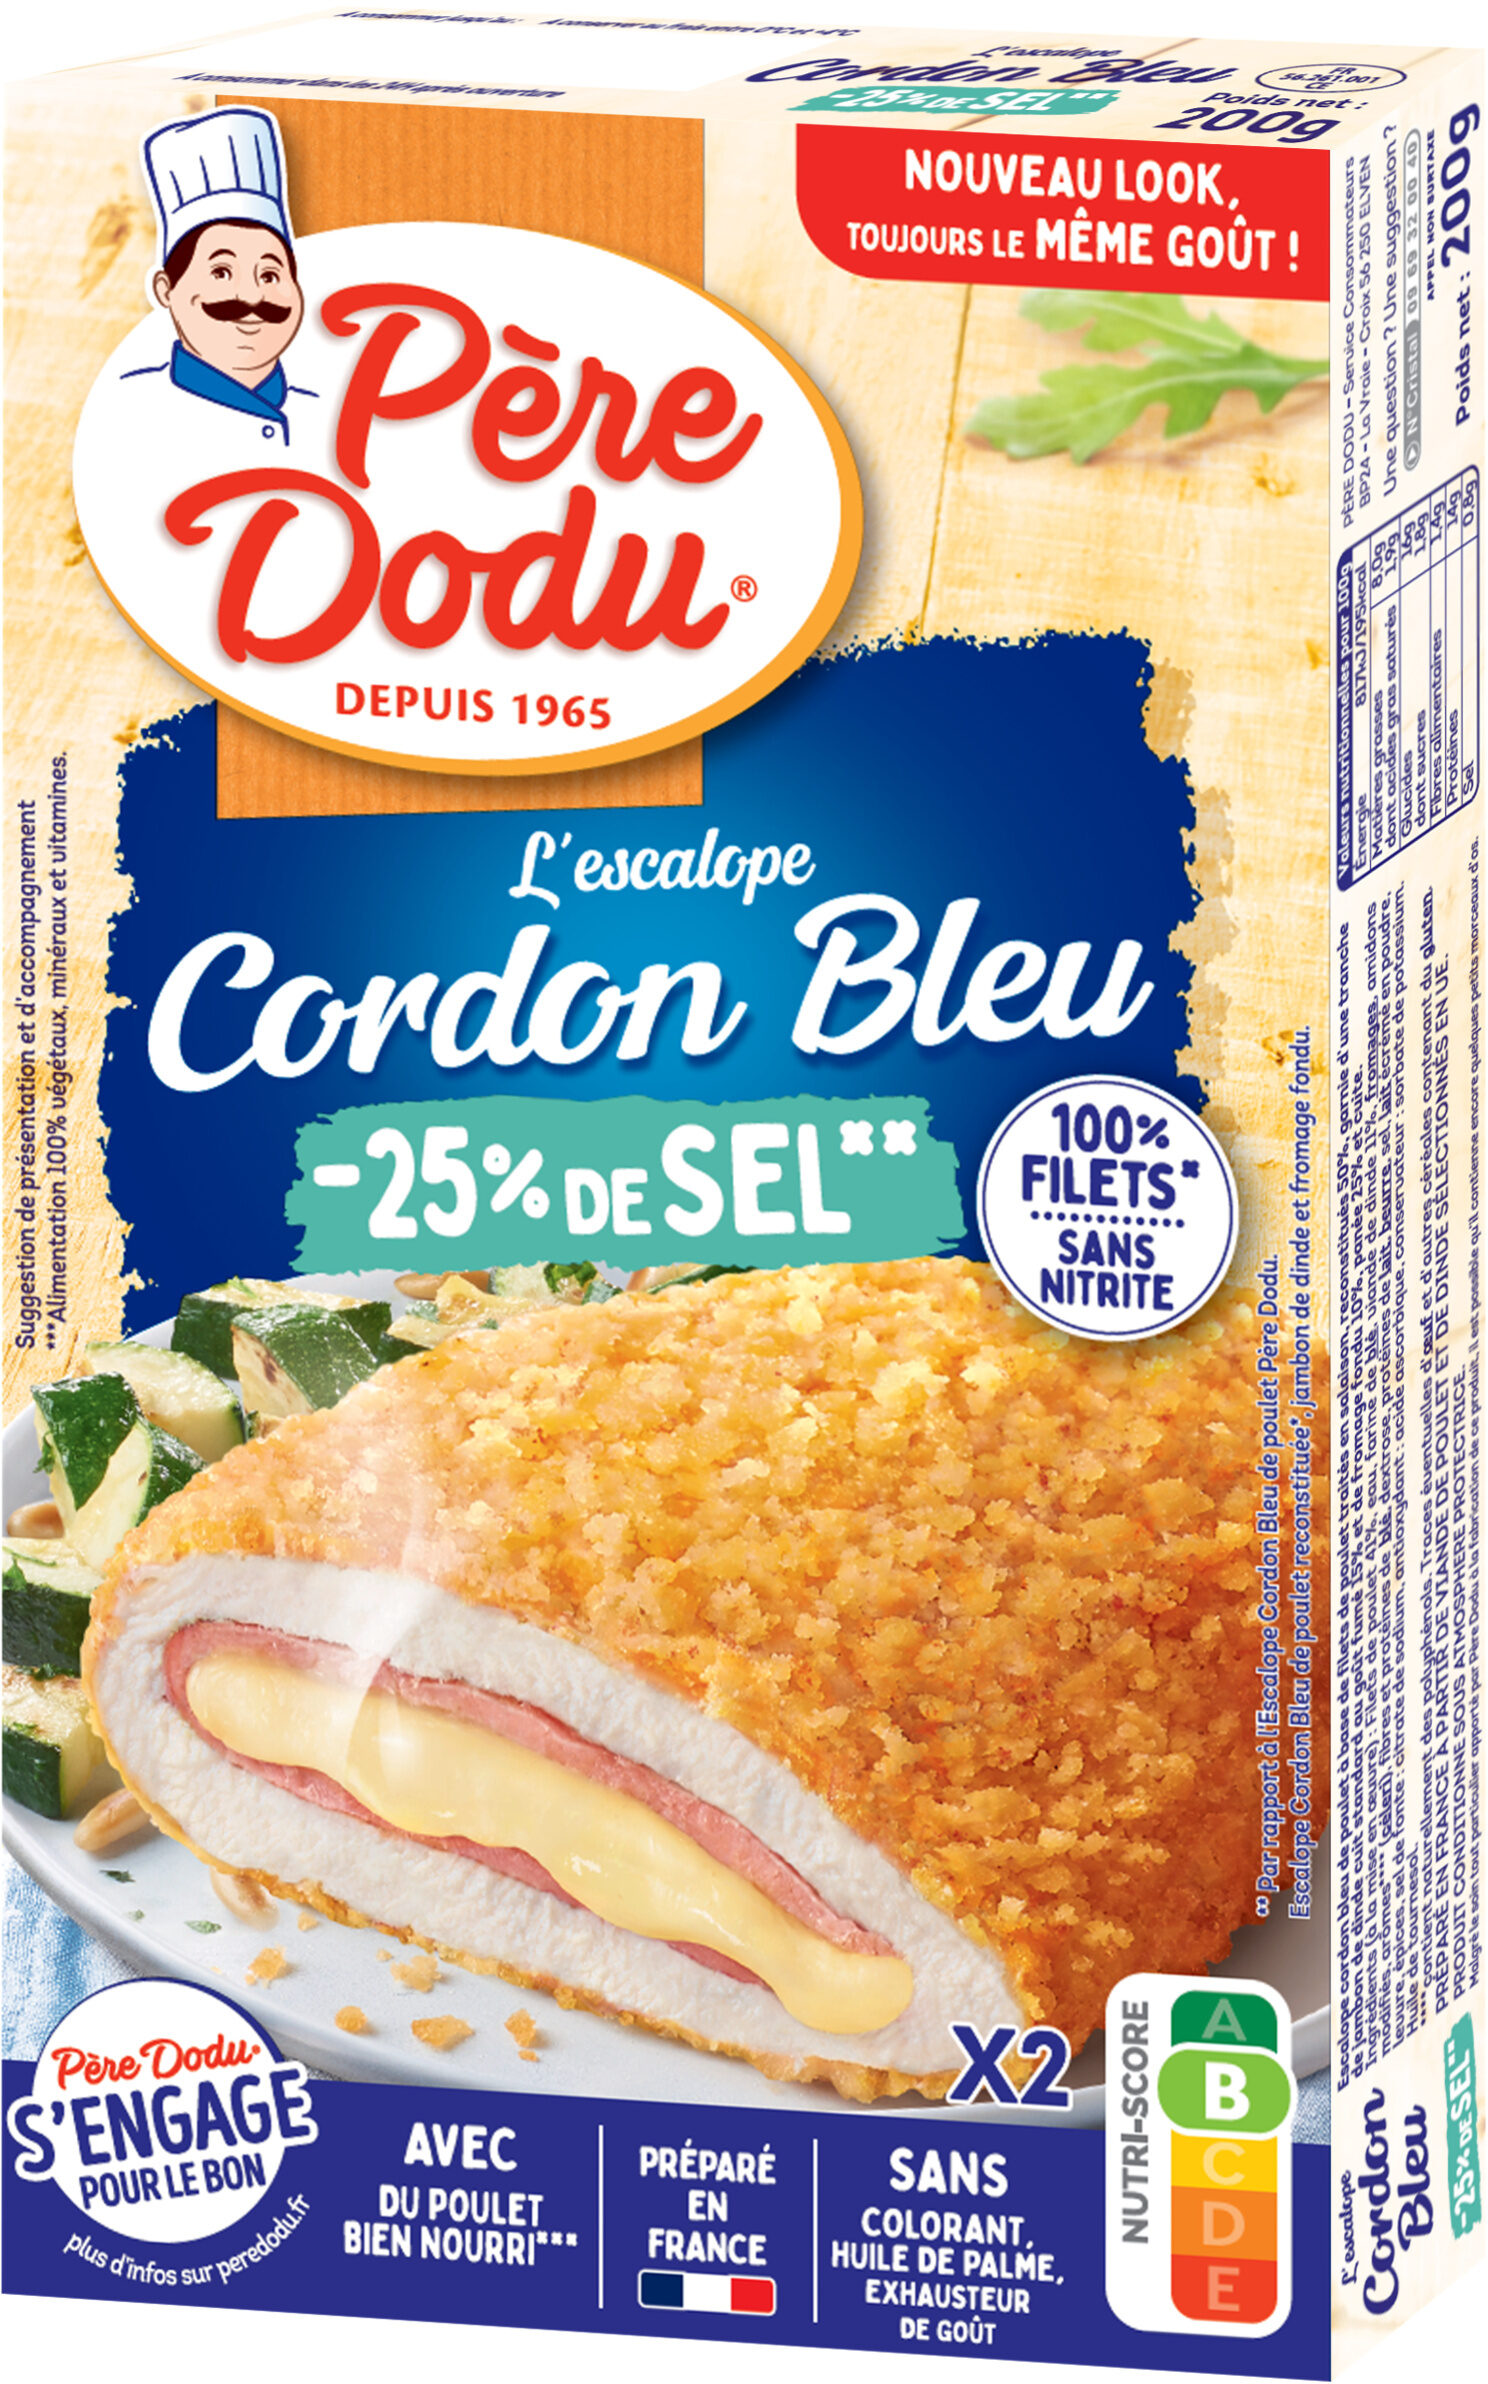 Escalope cordon bleu de poulet -25% de sel - Produit